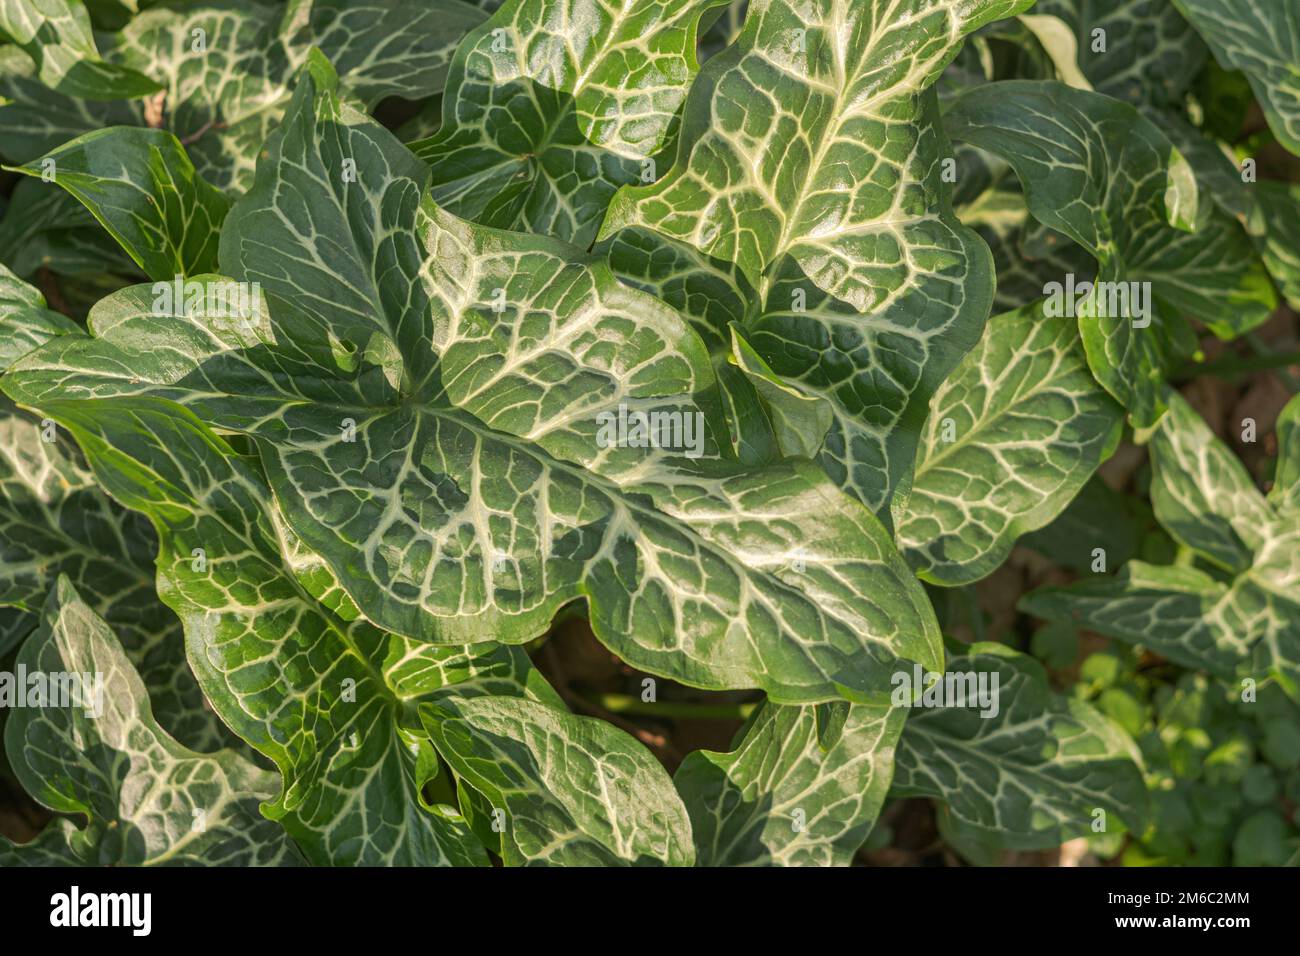 arum italicum leaves close up Stock Photo